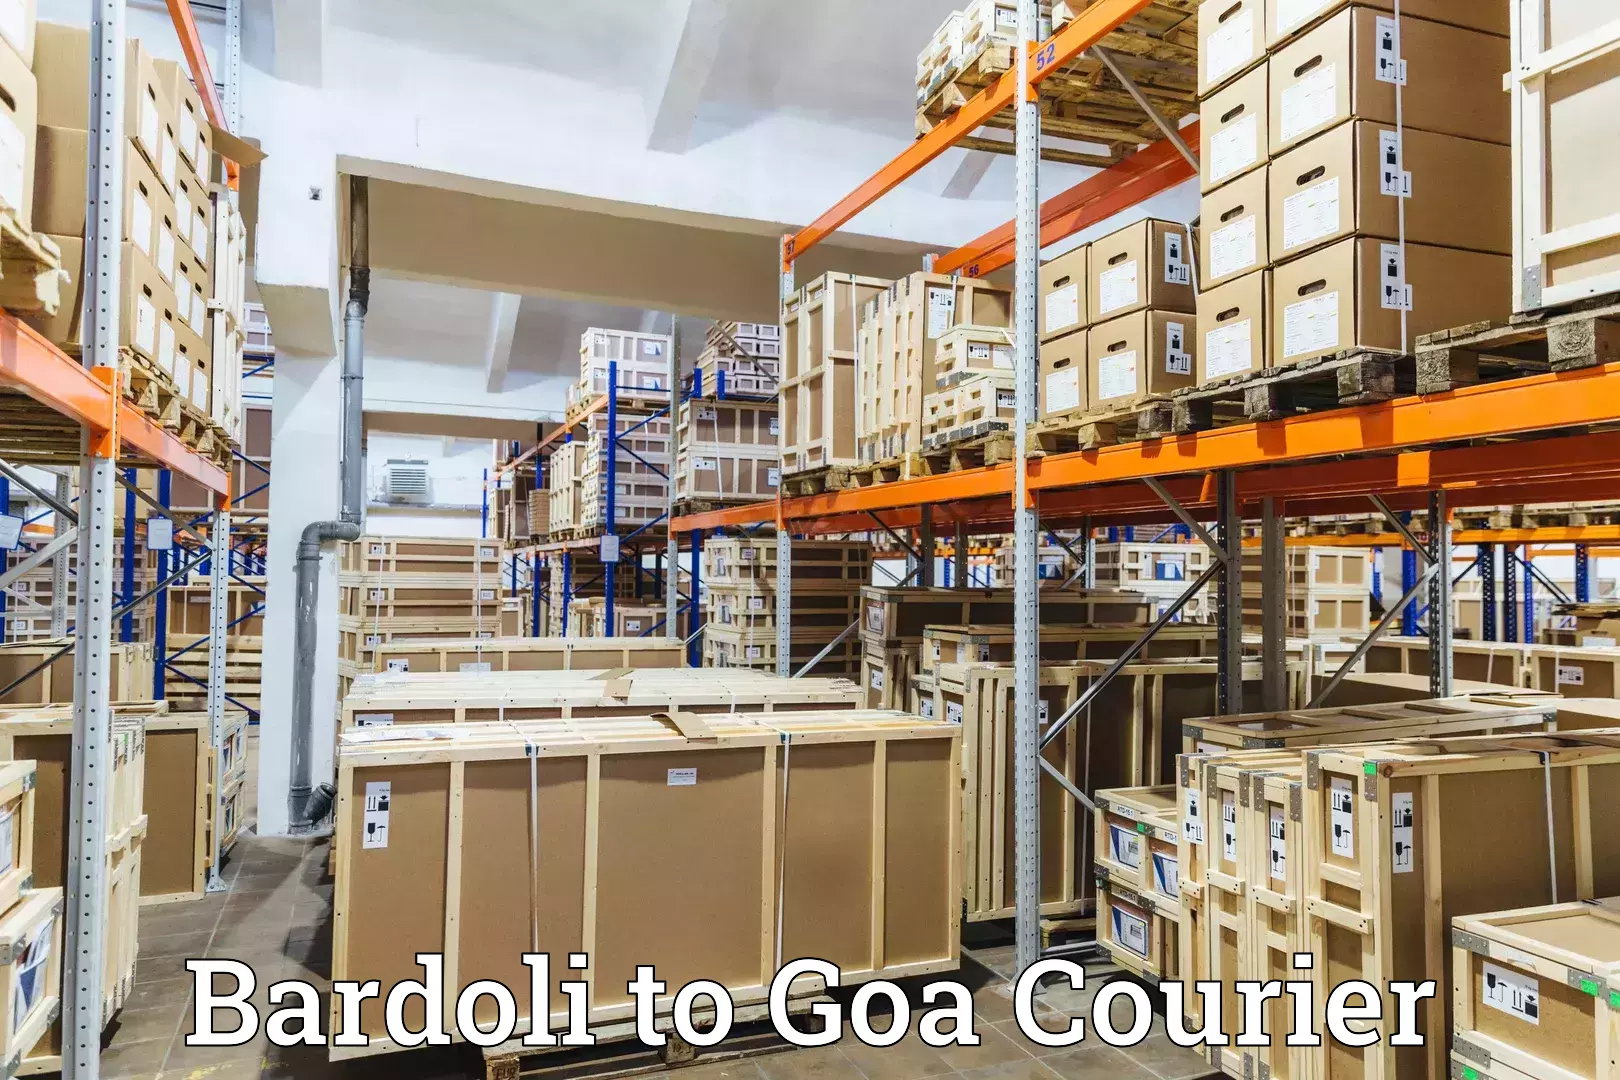 Delivery service partnership in Bardoli to Canacona